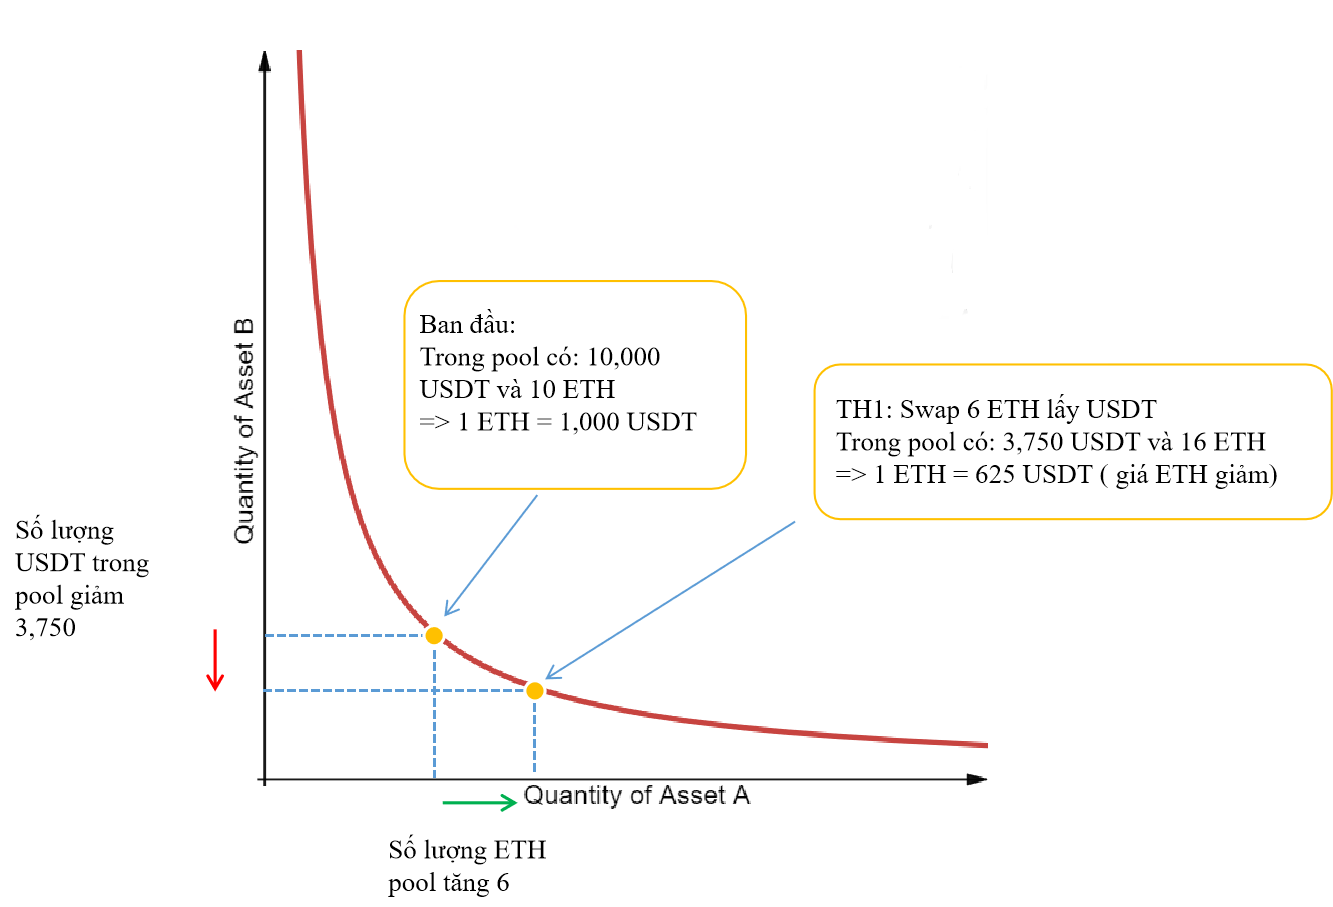 Analiza modelu działania Uniswap V2 – Pioneer w AMM